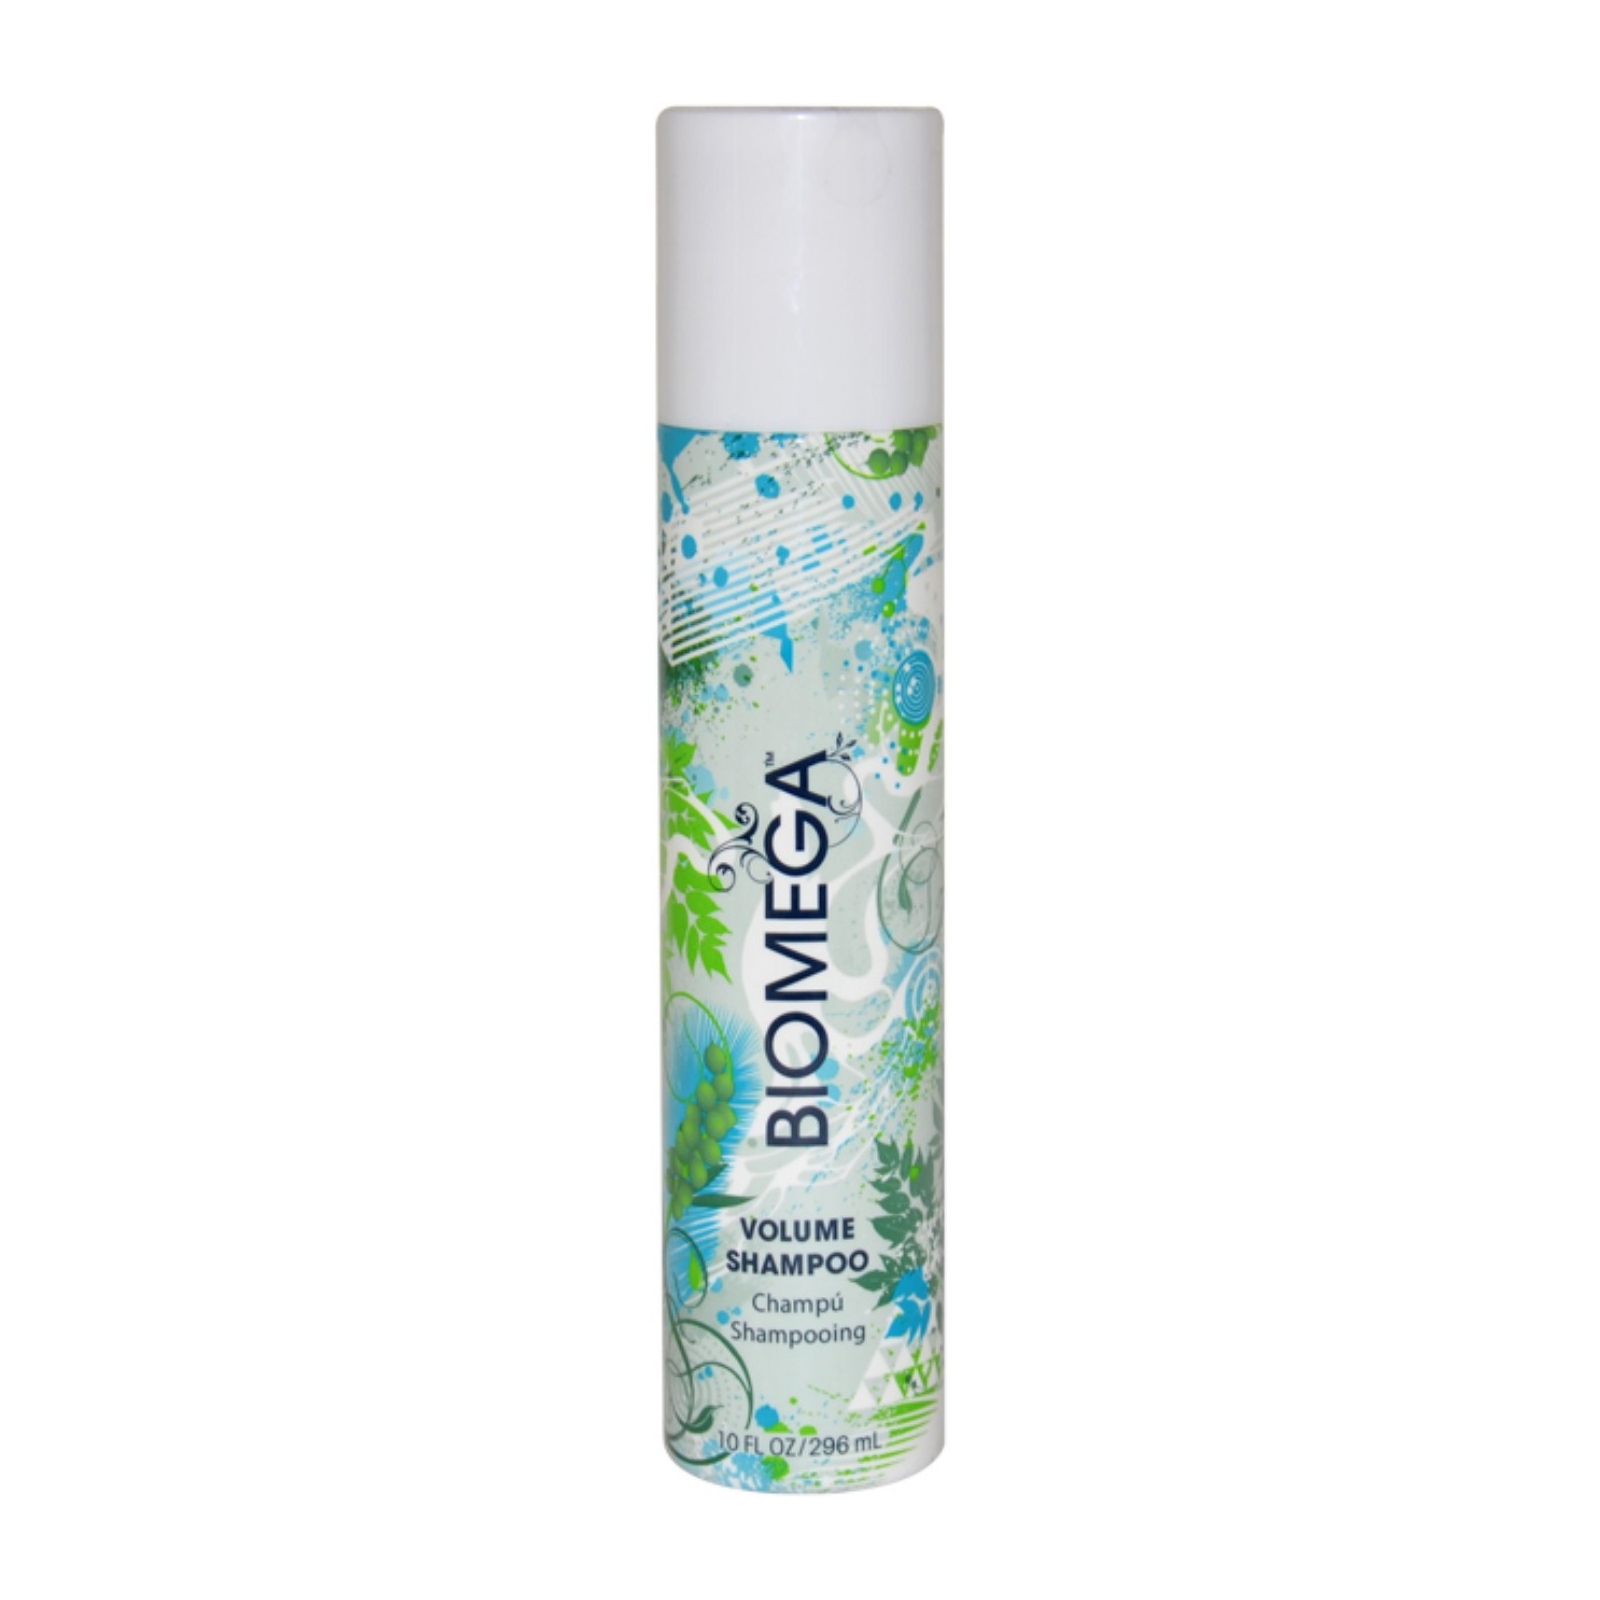 Aquage Biomega Volume Shampoo by  for Unisex - 10 oz Shampoo